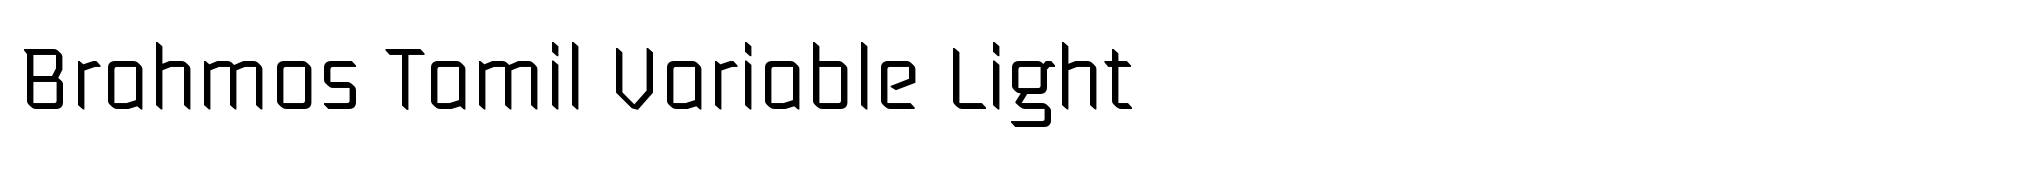 Brahmos Tamil Variable Light image